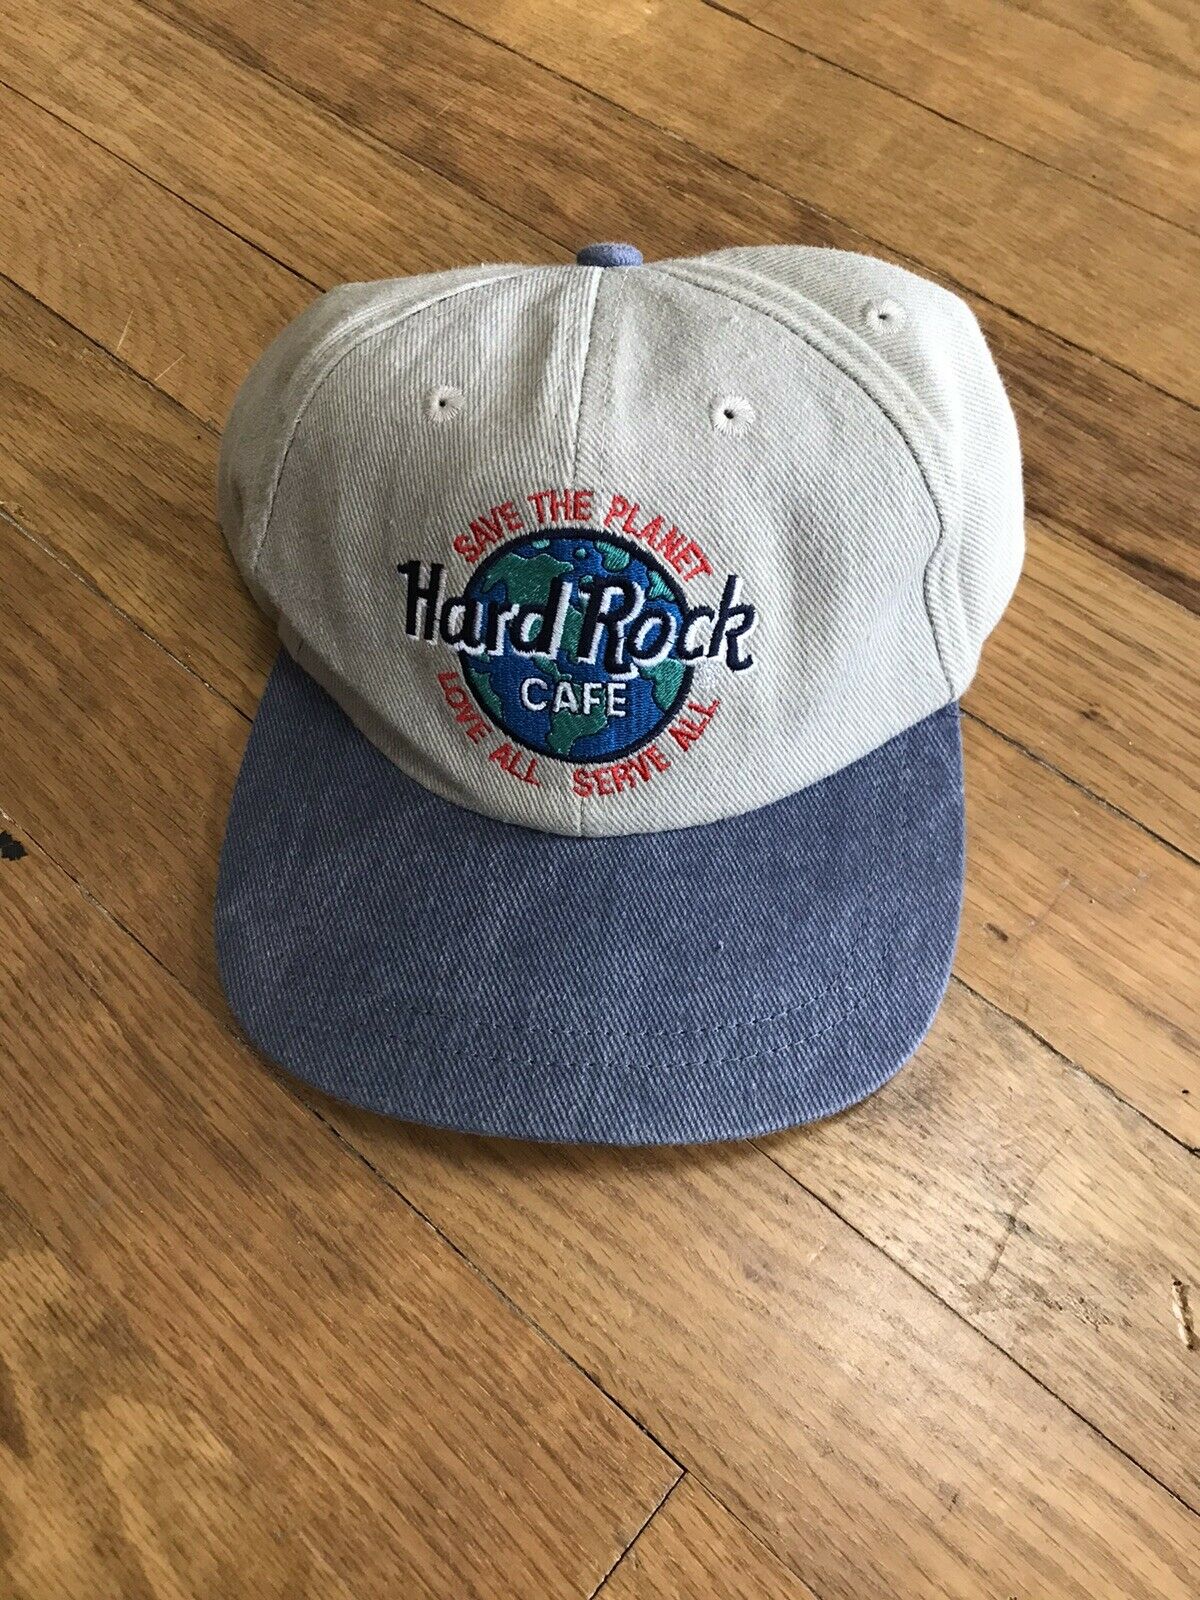 Vintage Hard Rock Cafe New York Save The Planet Adjustable Snapback Hat Cap